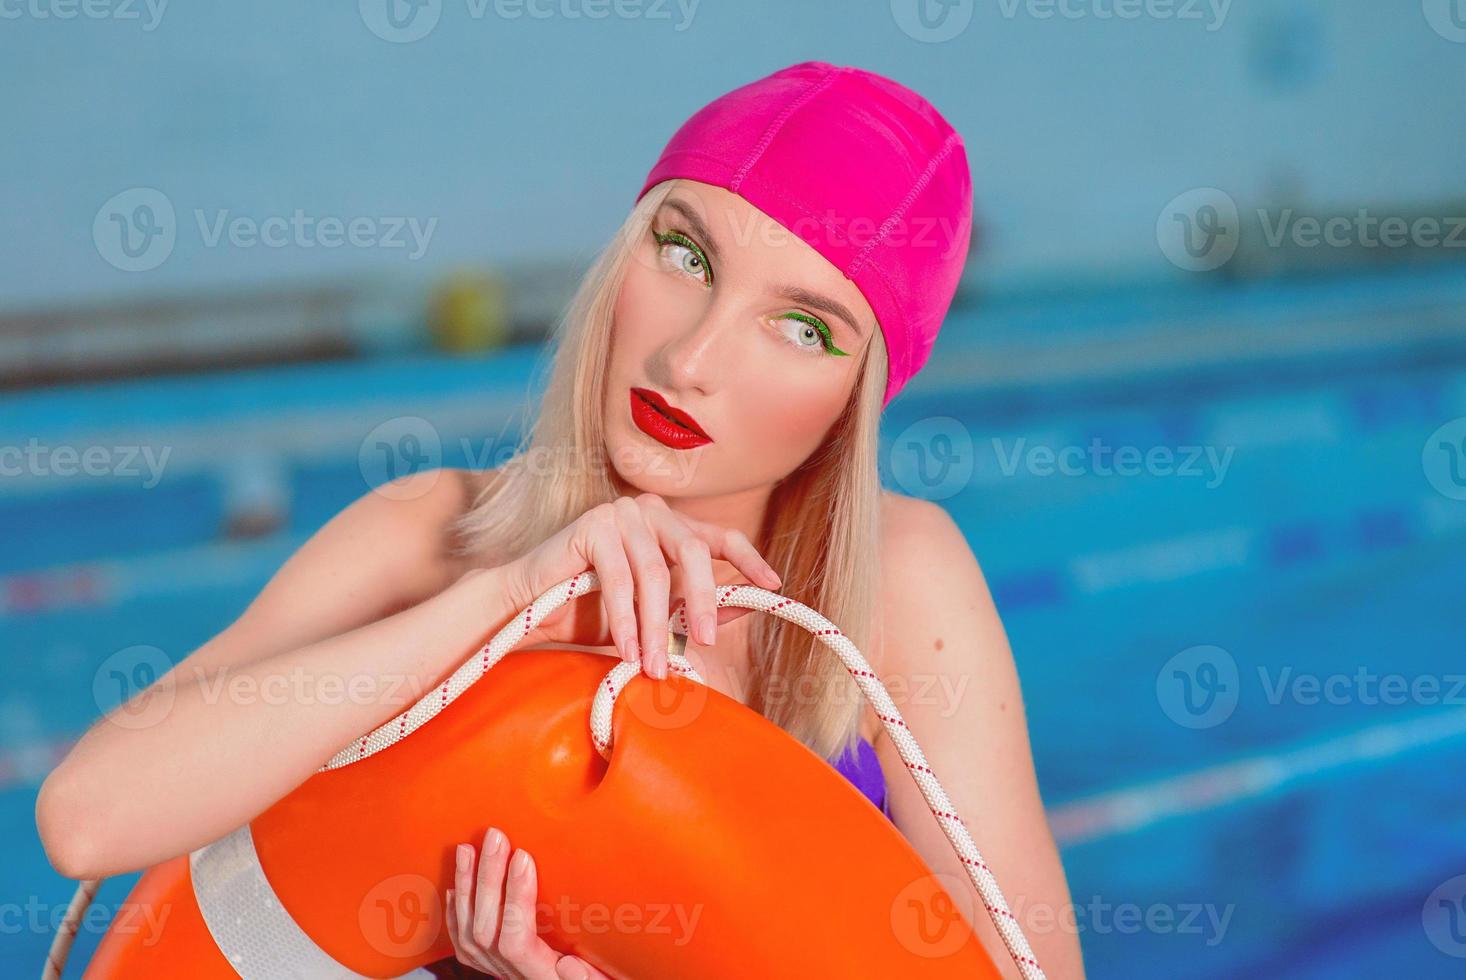 Ritratto di atletico bella donna bionda bagnino con trucco elegante in cuffie da bagno e costumi da bagno in piscina con salvagente foto